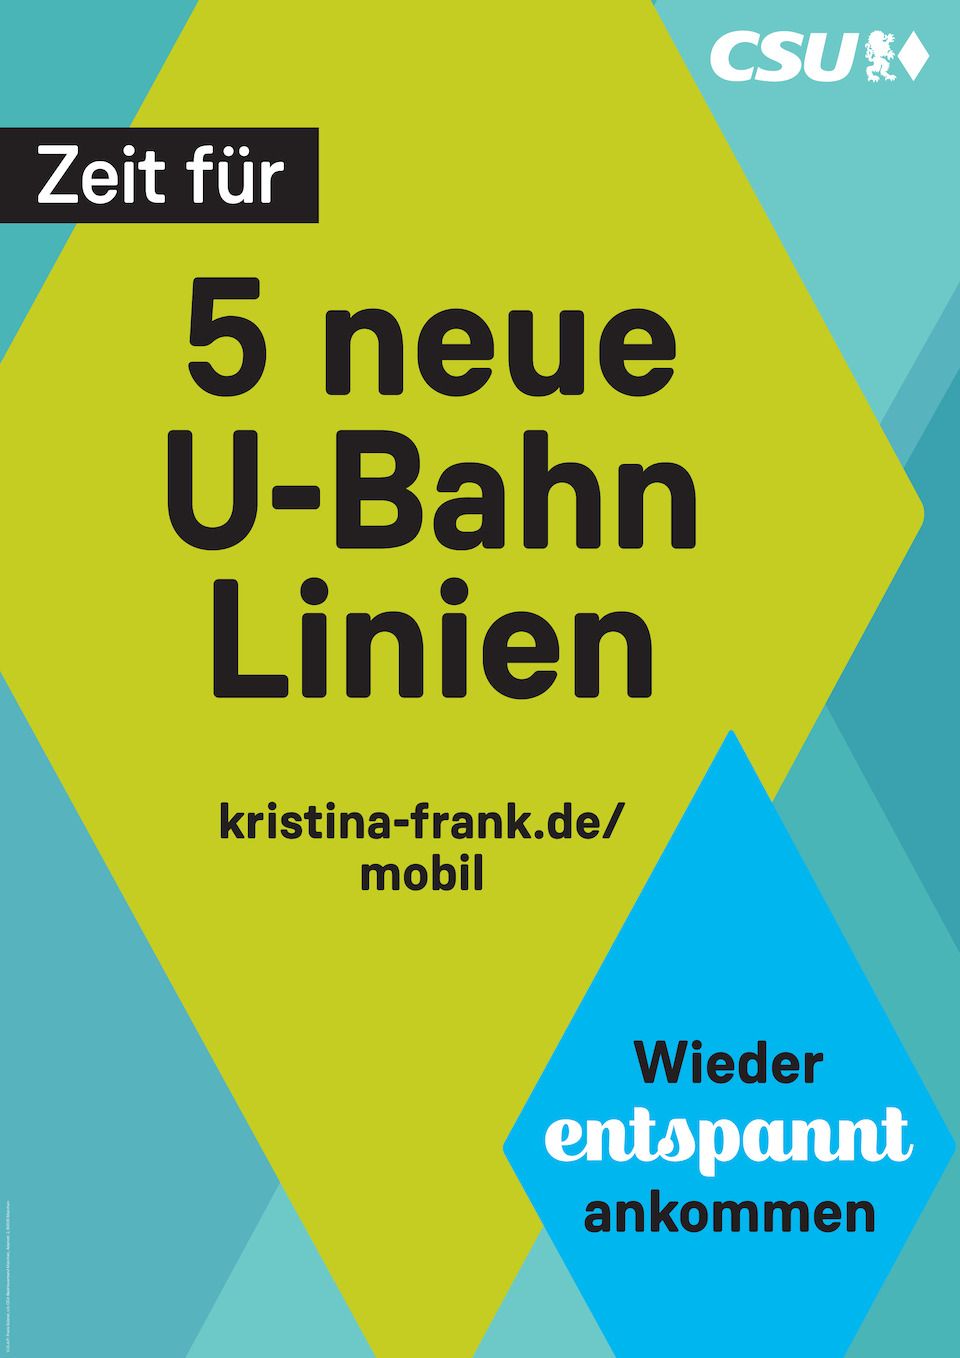 Wahlplakat Kristina Frank - Zeit für 5 neue U-Bahn Linien